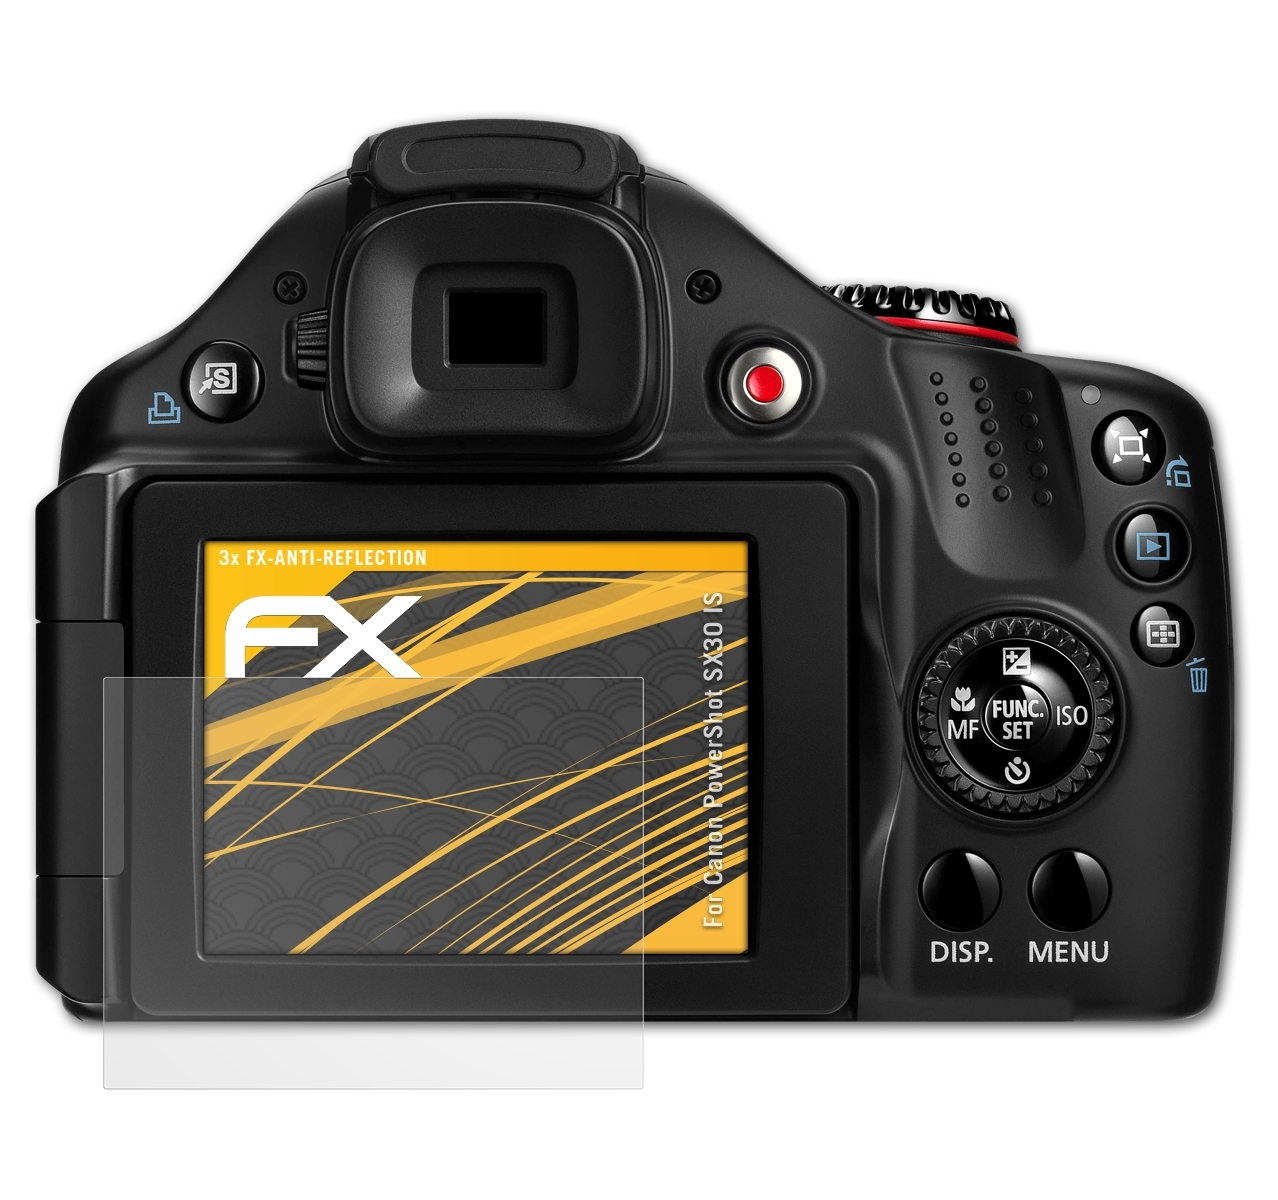 FX-Antireflex Canon PowerShot IS) ATFOLIX 3x Displayschutz(für SX30